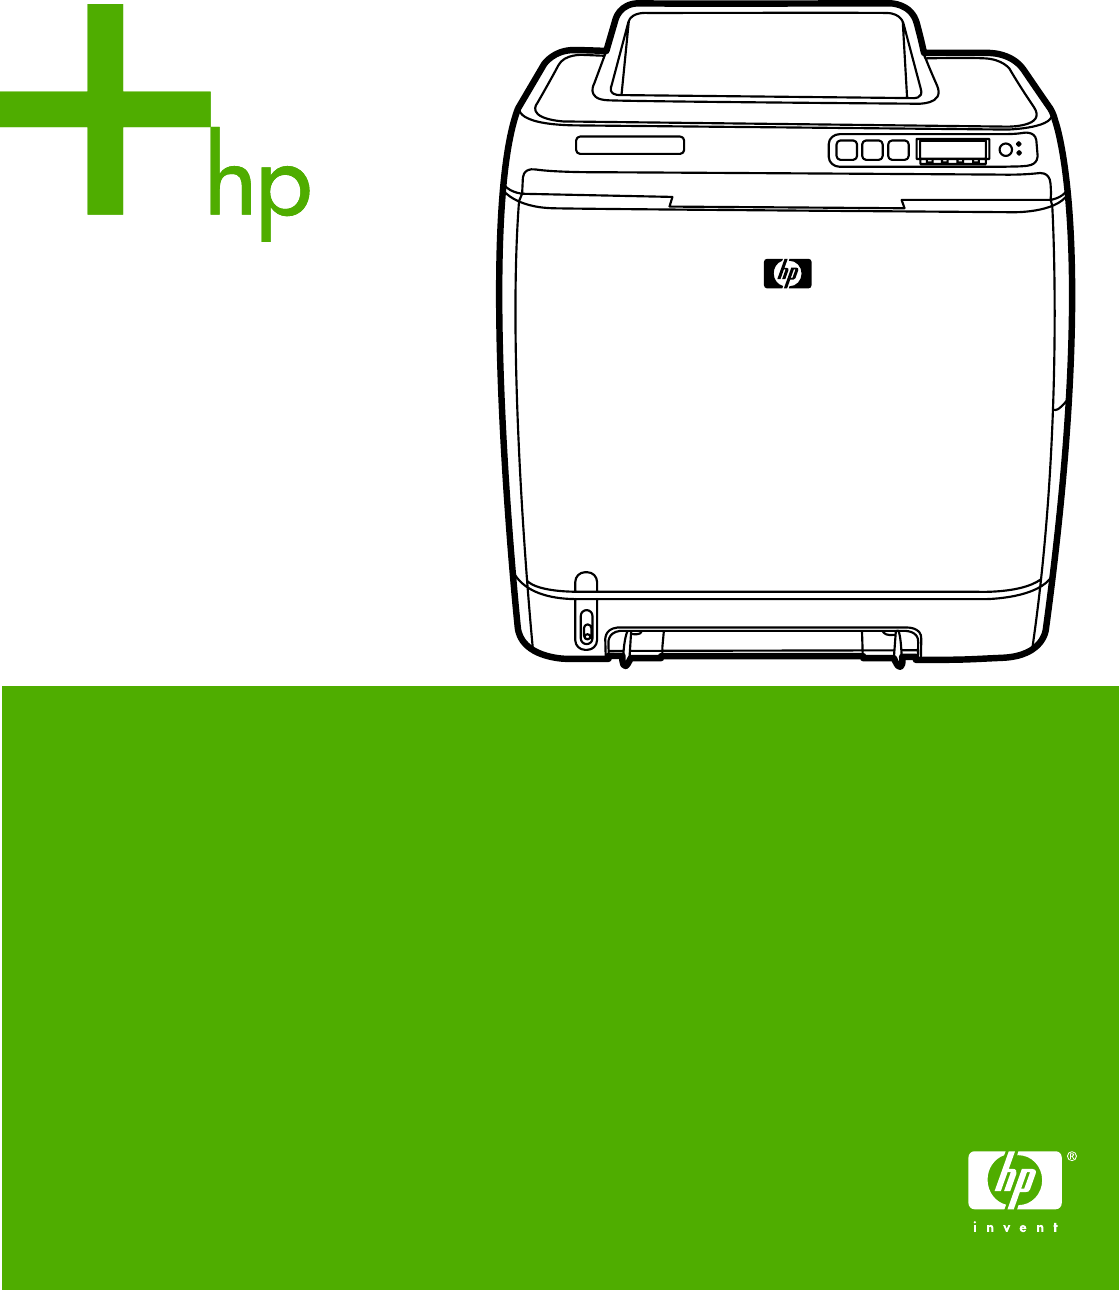 hp 2600n printer manual